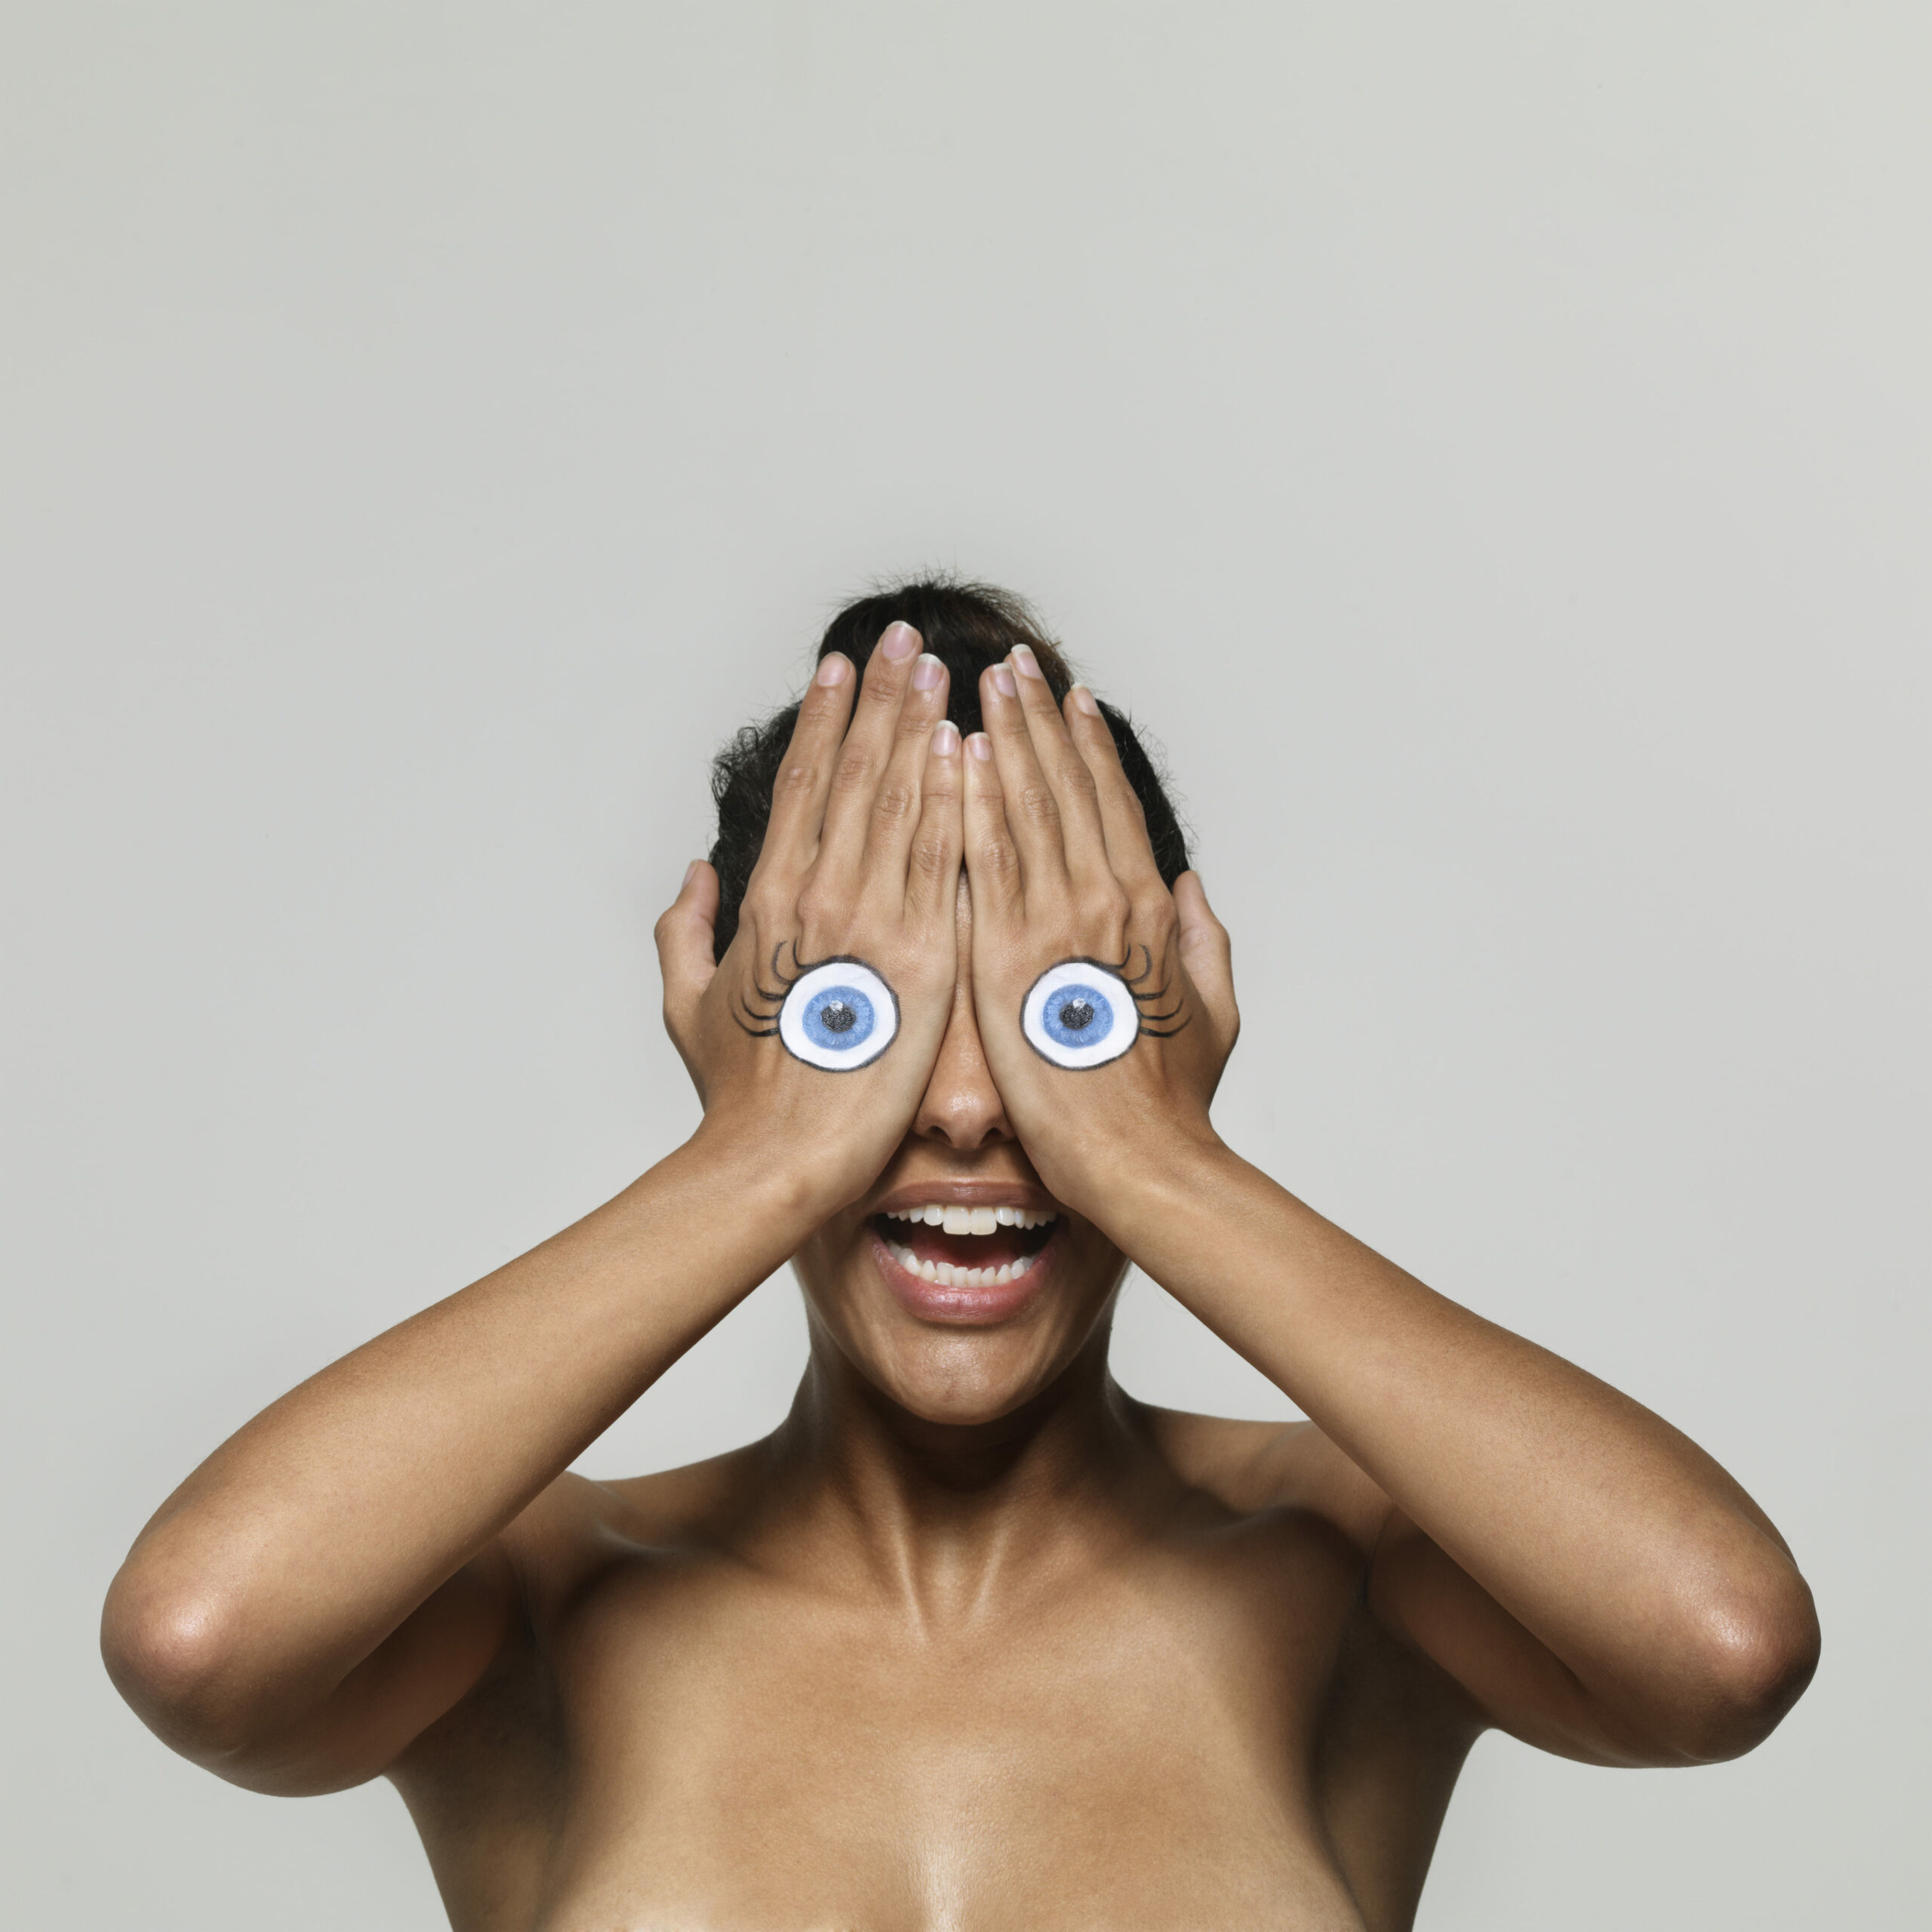 Frau hält Hände mit aufgemalten Augen vor Gesicht - Lidrandpflege